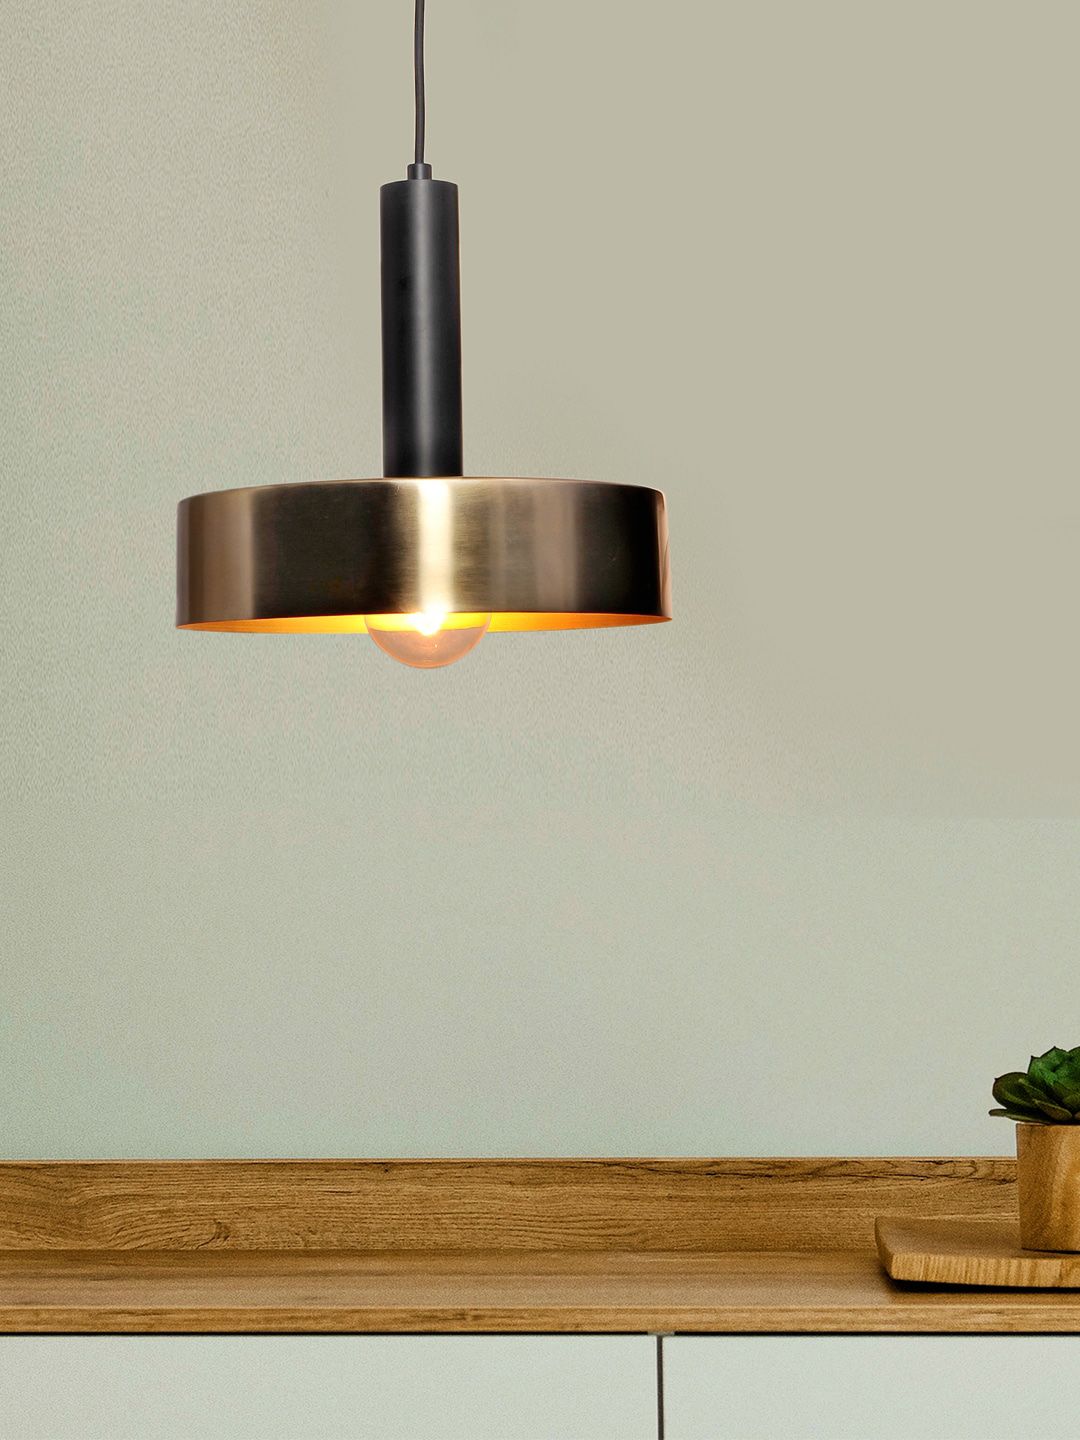 THE LIGHT STORE Unisex Black Self Design Pendent Lamp Price in India